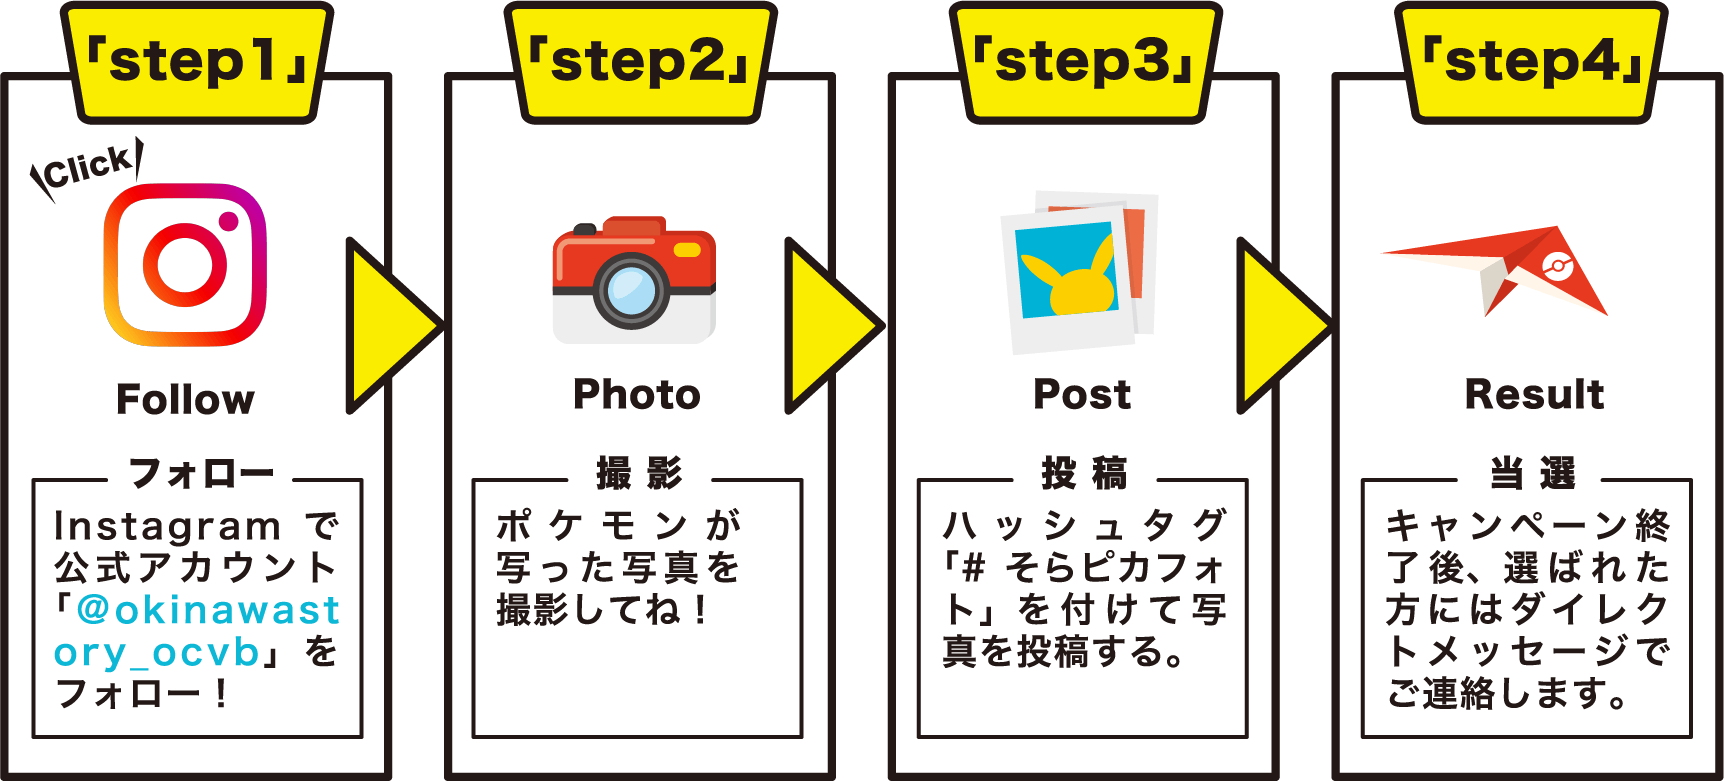 step1 フォロー：Instagramで公式アカウント「＠okinawastory_ocvb」をフォロー！ step2 撮 影:ポケモンが写った写真を撮影してね！ step3 投 稿:ハッシュタグ「#そらピカフォト」を付けて写真を投稿する。 step4 当 選:キャンペーン終了後、選ばれた方にはダイレクトメッセージでご連絡します。